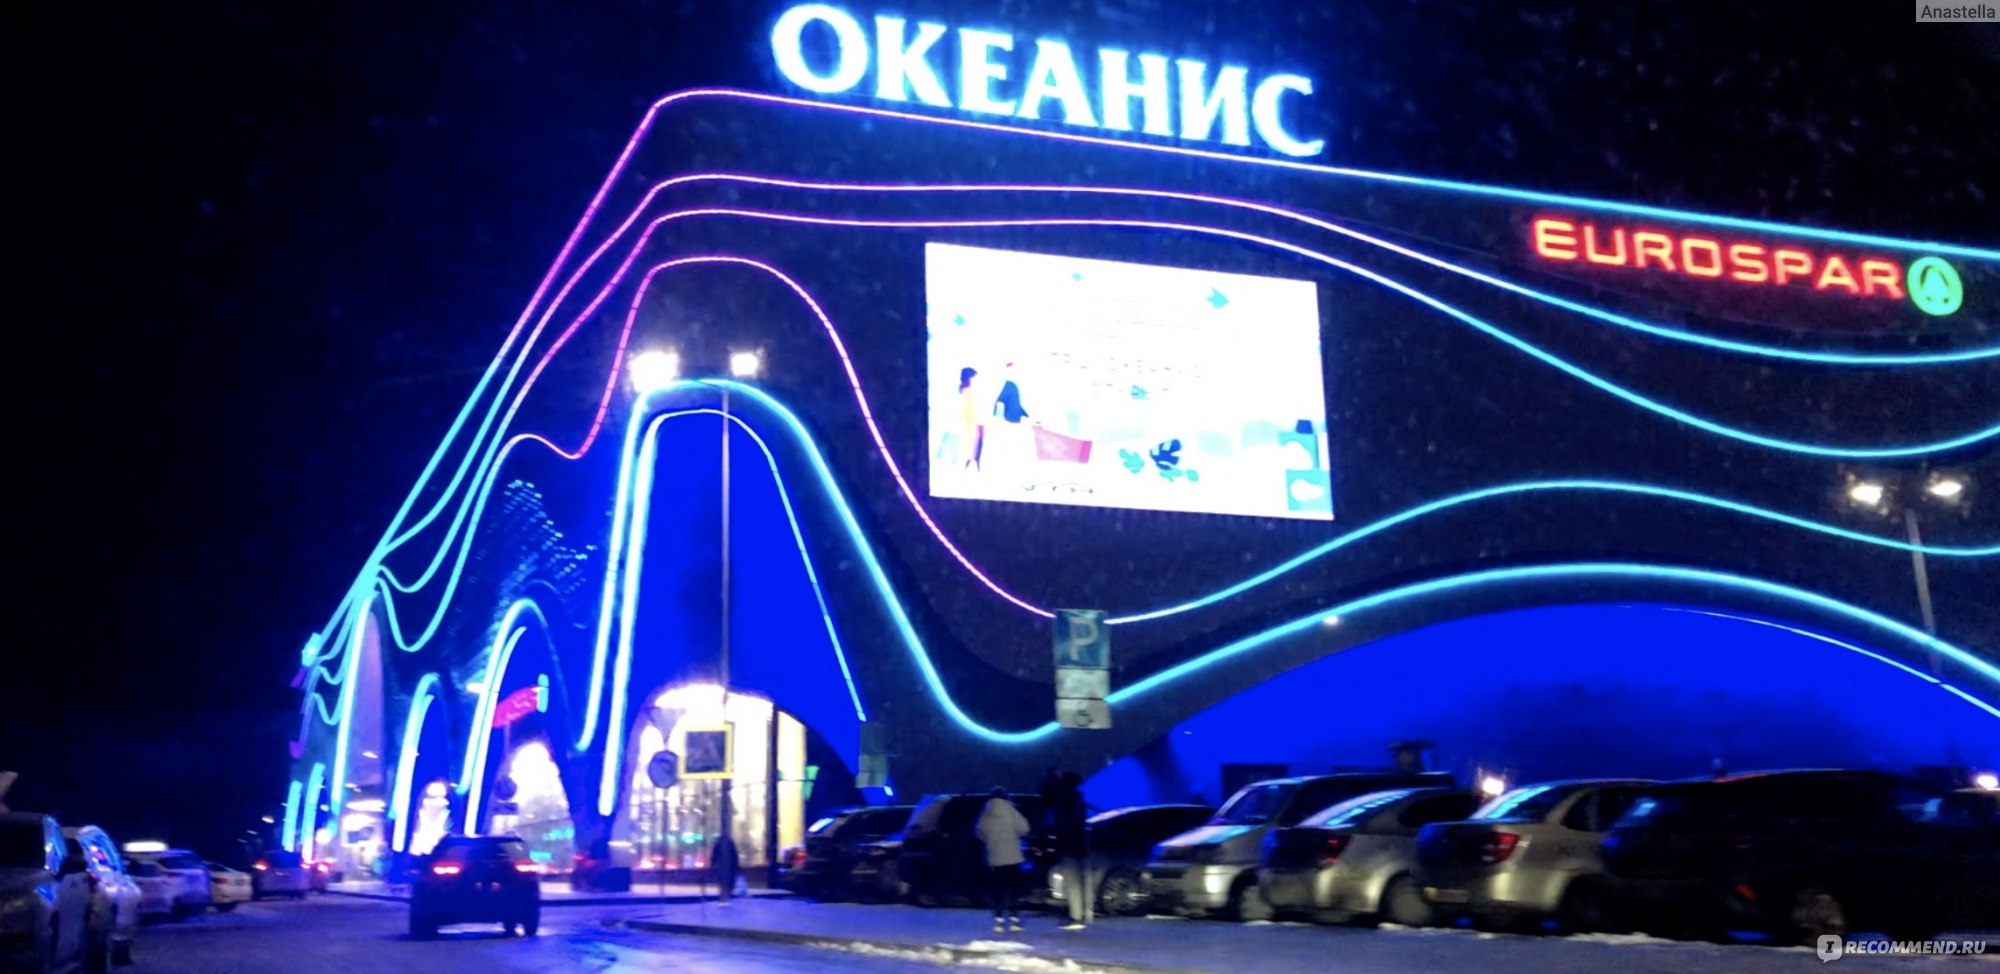 Многофункциональный комплекс "Океанис" , Нижний Новгород фото